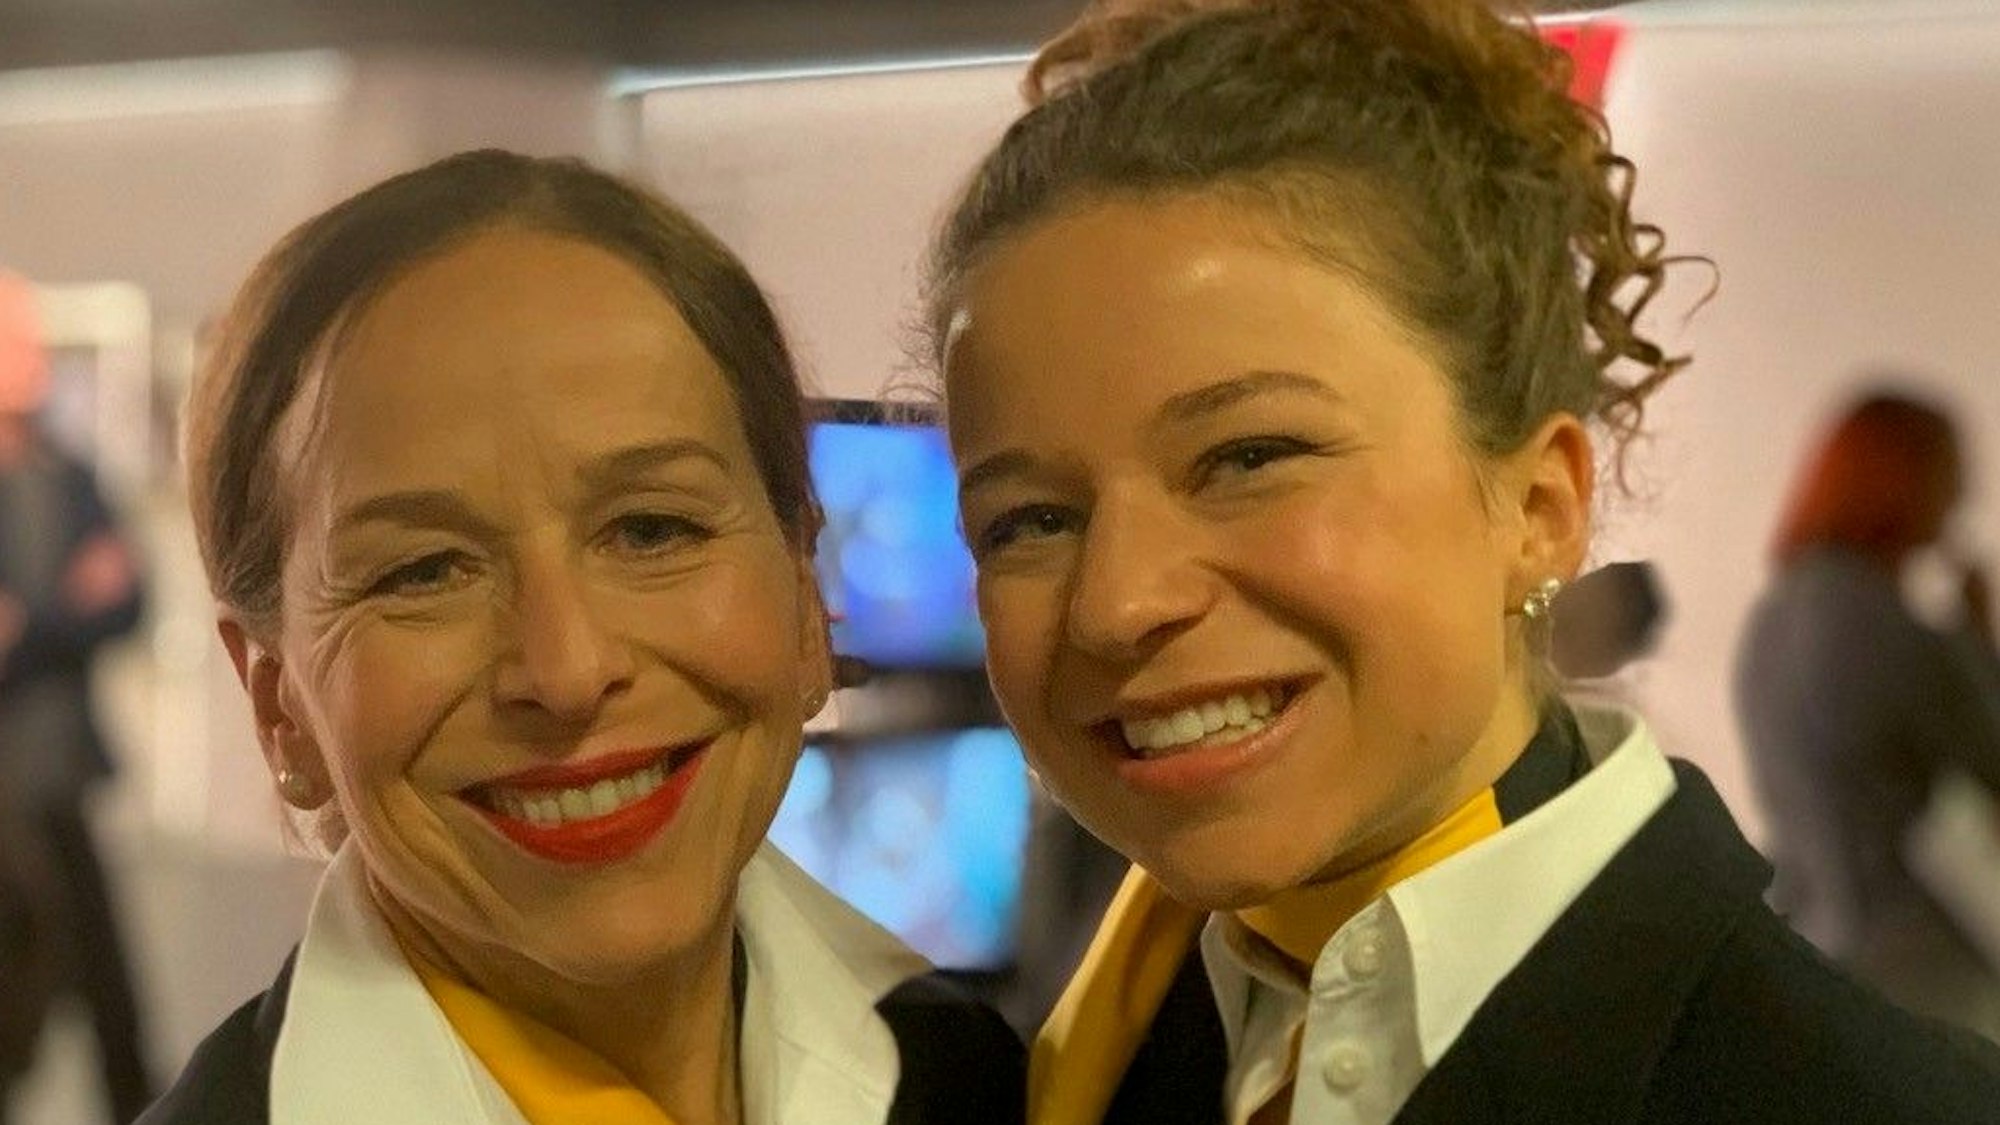 Zwei Frauen in Stewardess-Kleidung lächeln in die Kamera.